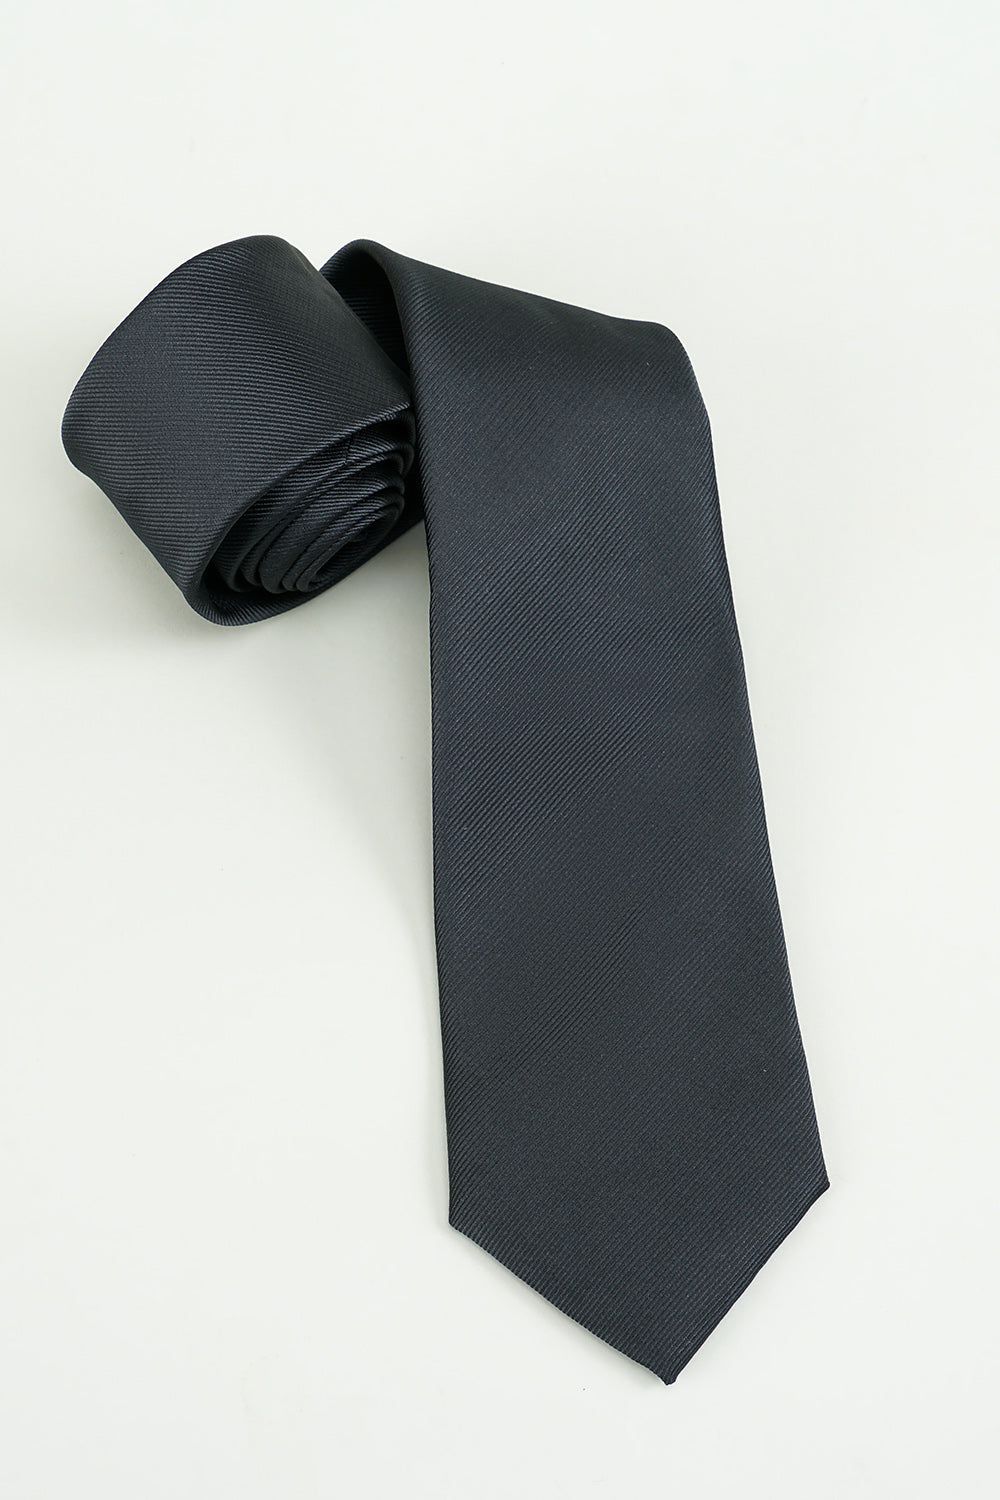 Black Solid Satin Party Tie